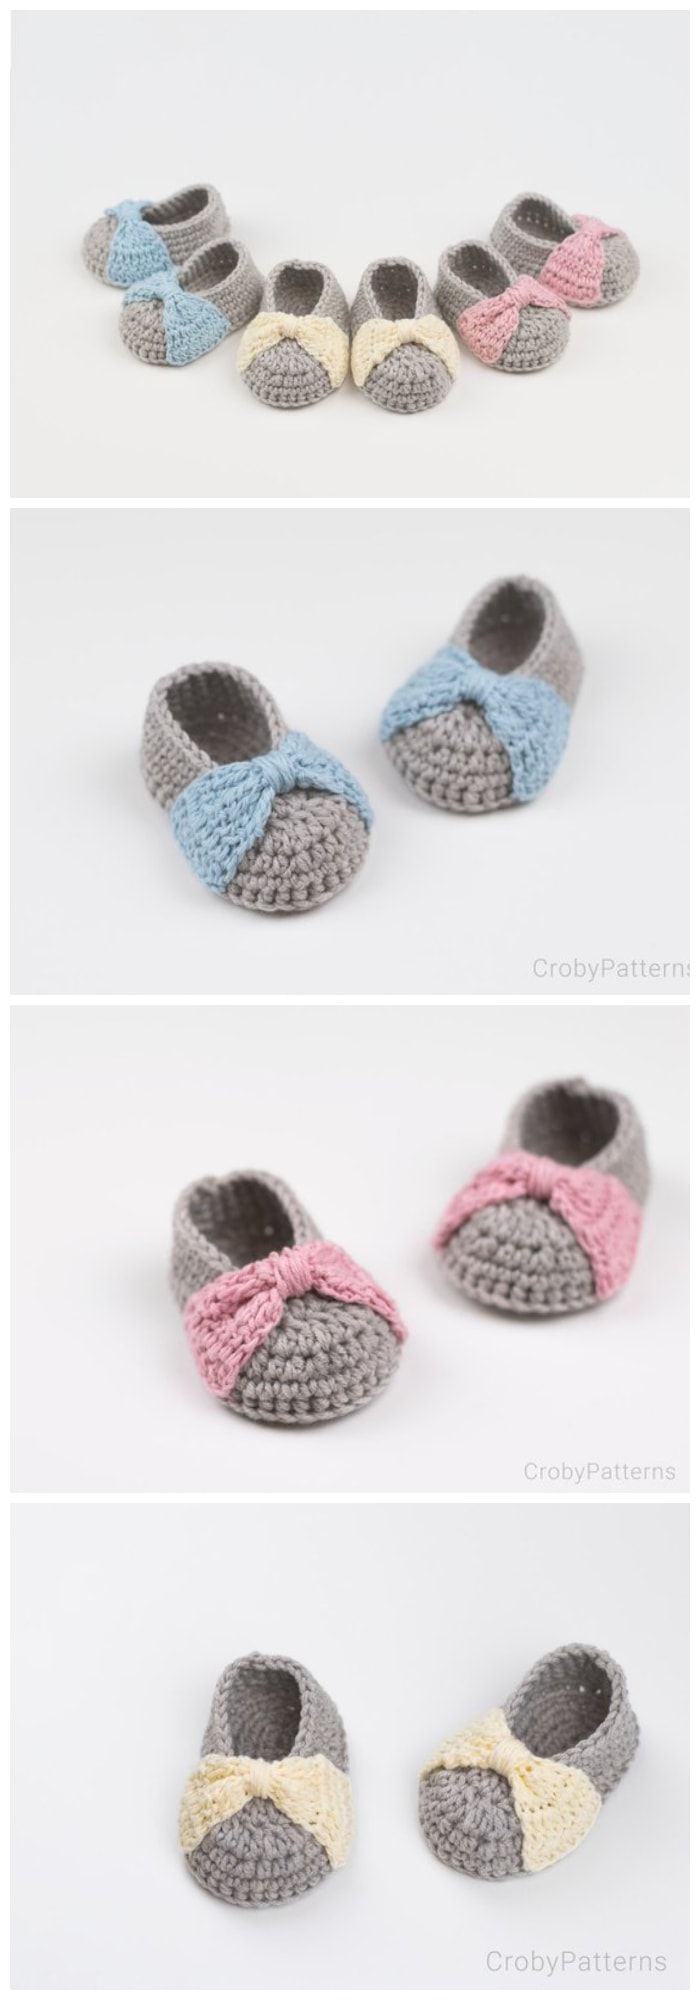 16 Free Crochet Baby Booties